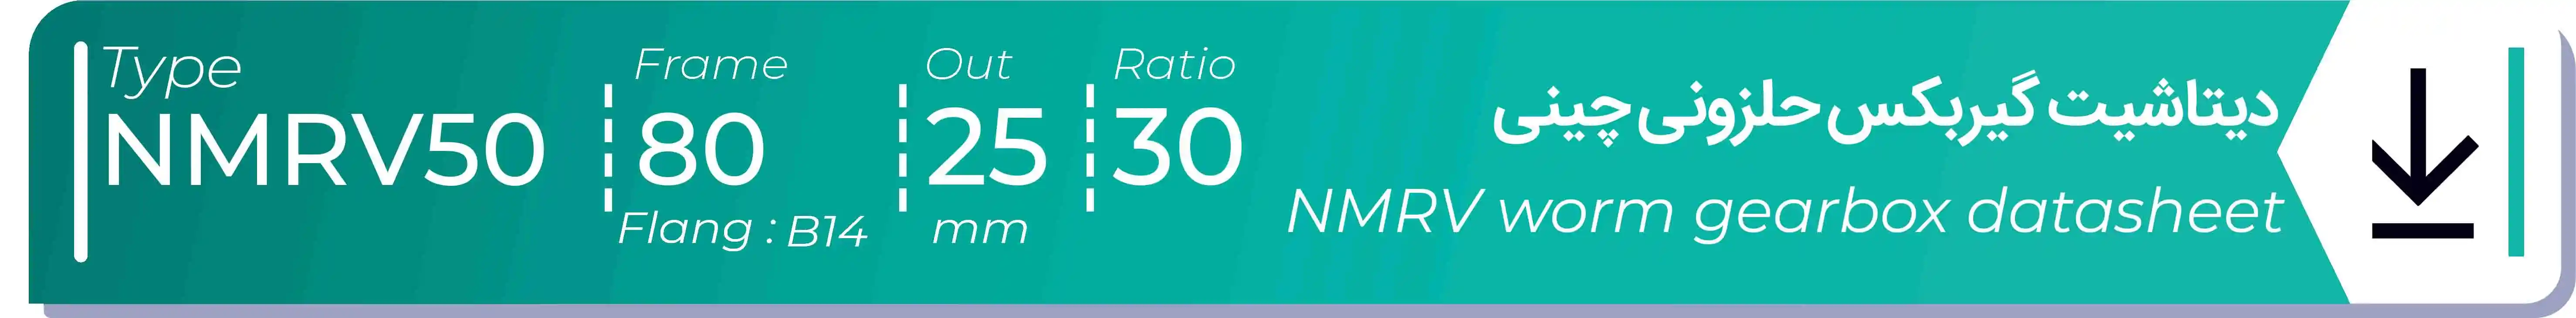  دیتاشیت و مشخصات فنی گیربکس حلزونی چینی   NMRV50  -  با خروجی 25- میلی متر و نسبت30 و فریم 80